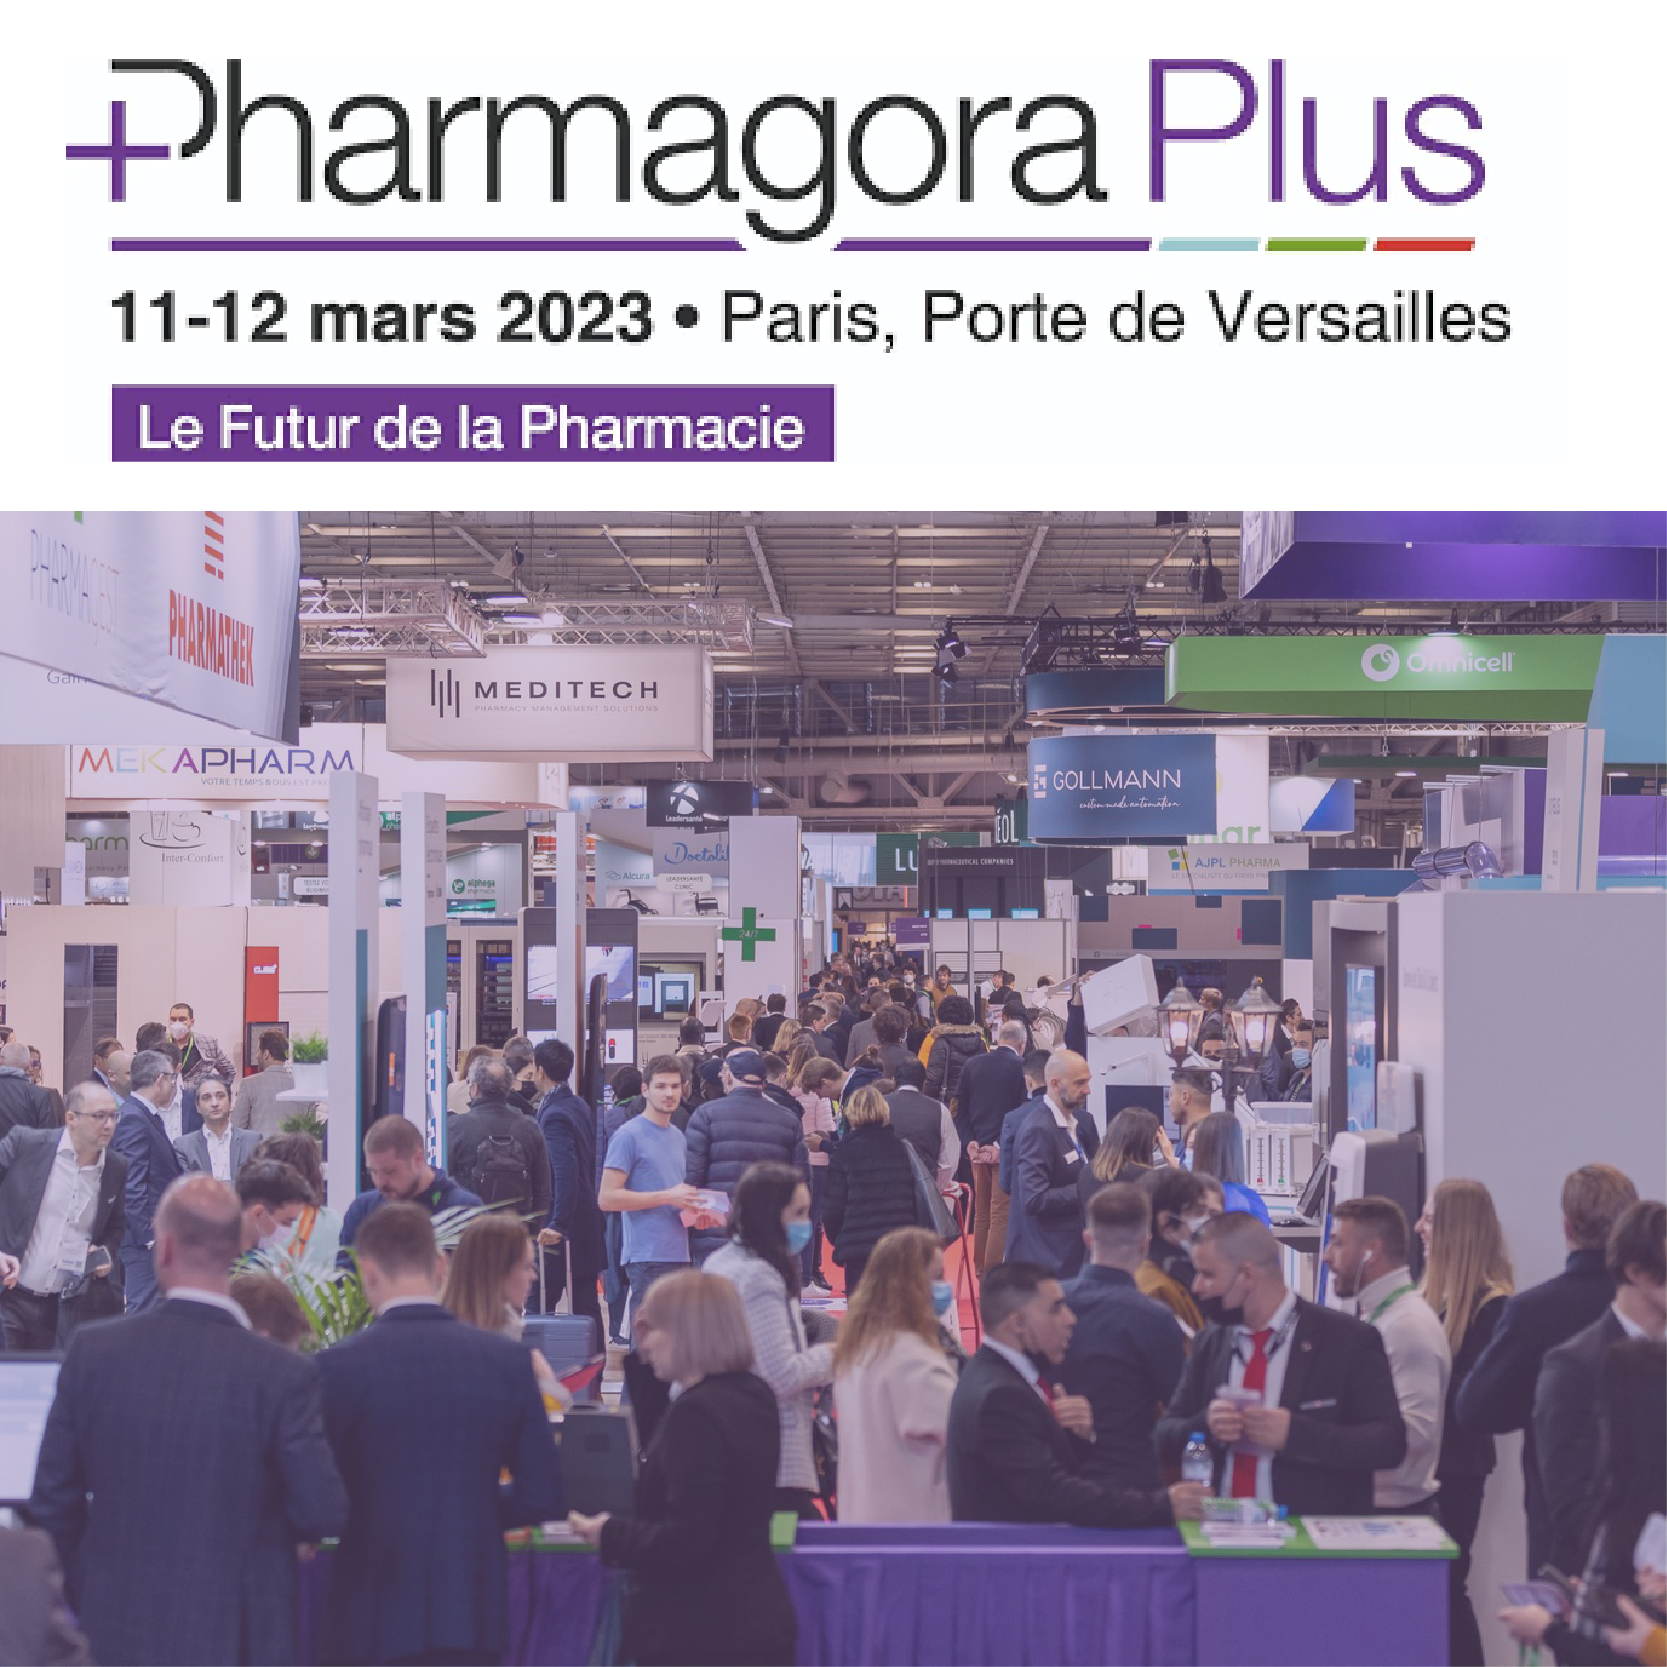 Pharmagora Plus 2023